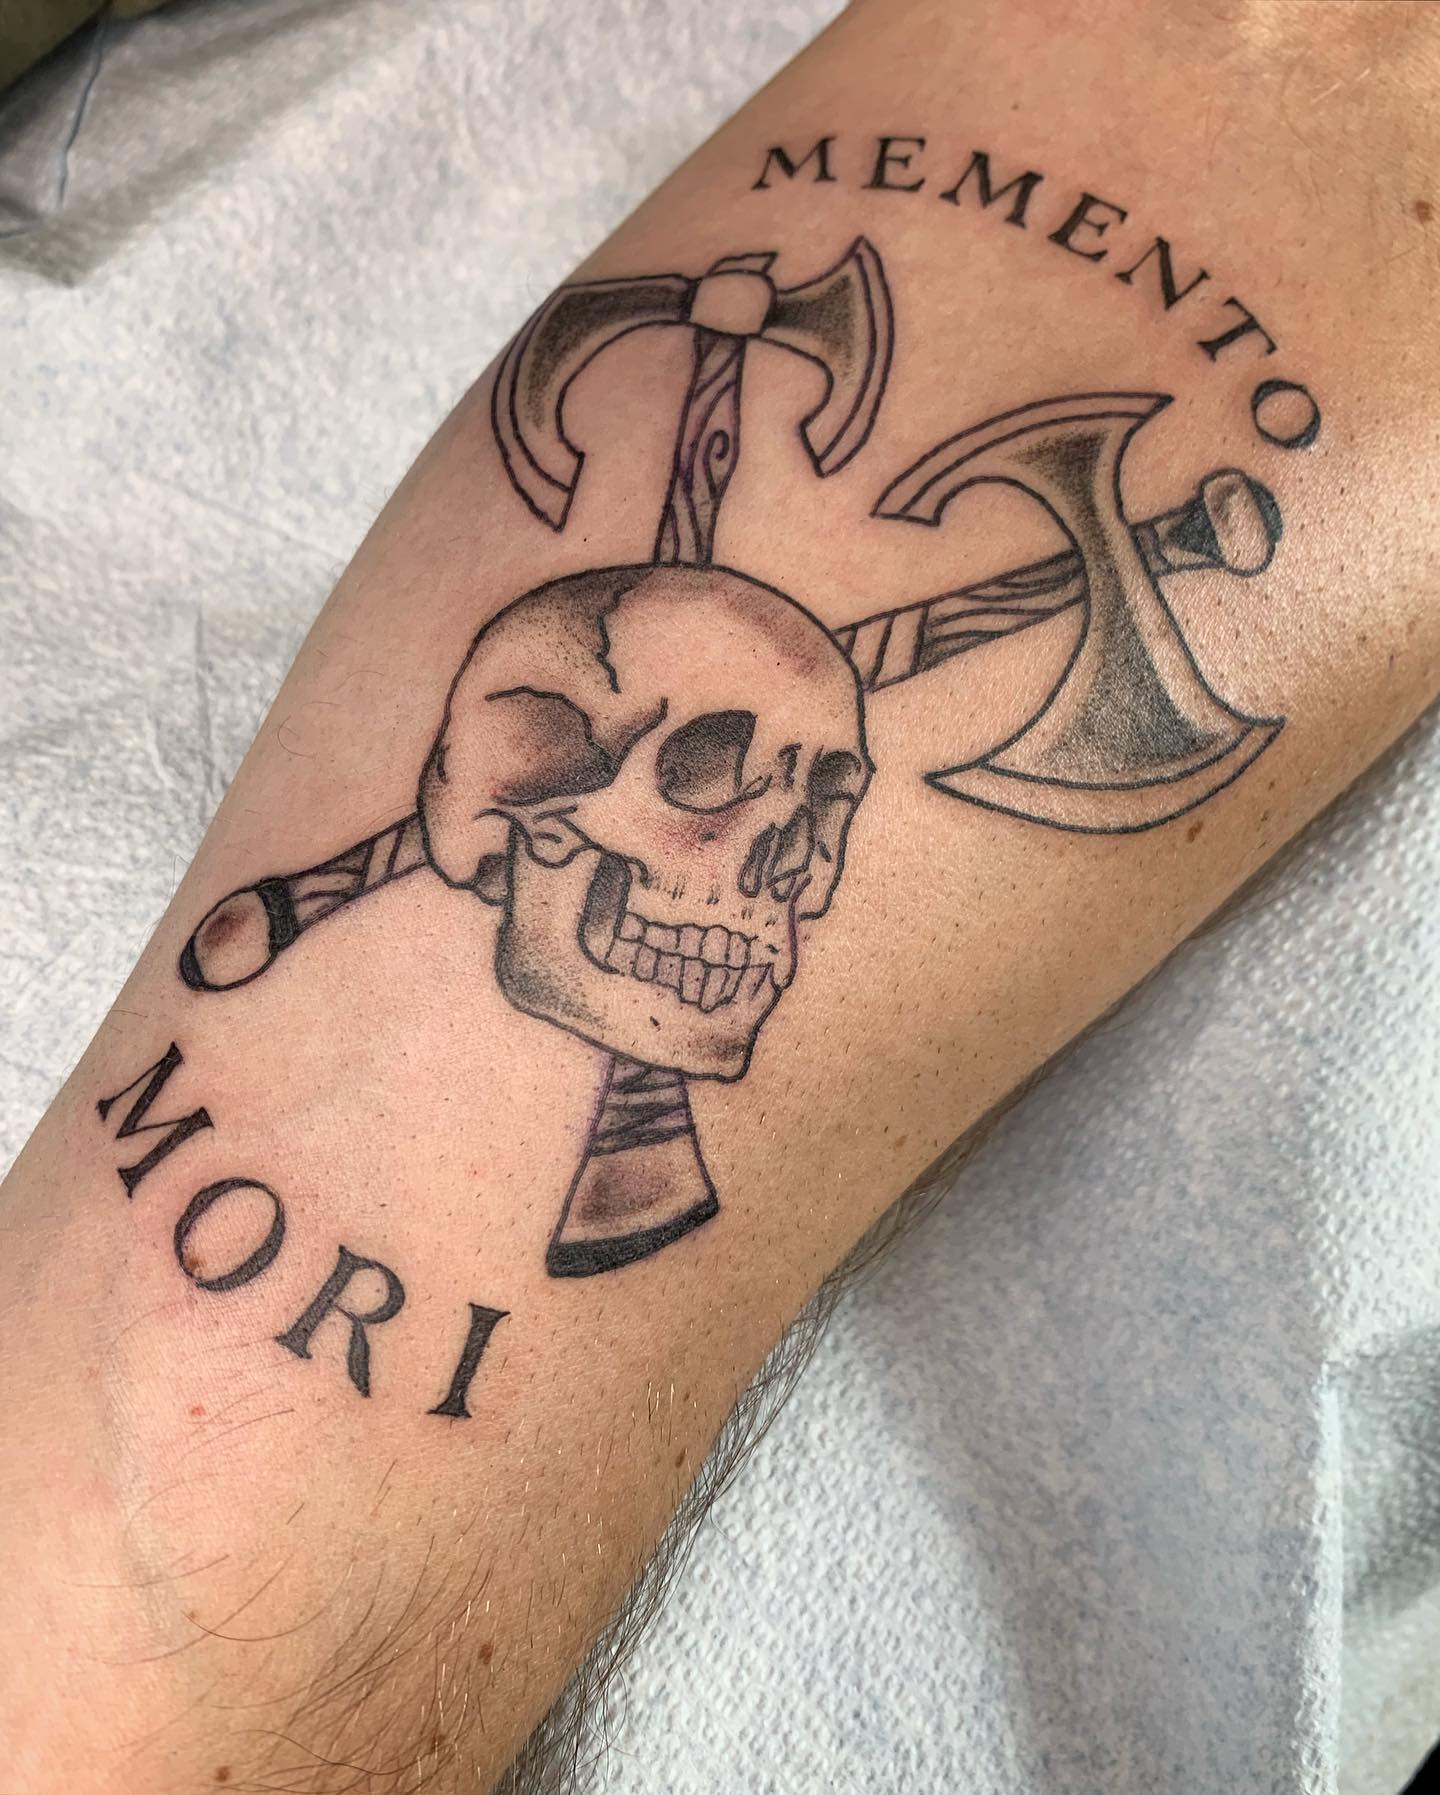 Tinta Negra Idea de Tatuaje Memento Mori